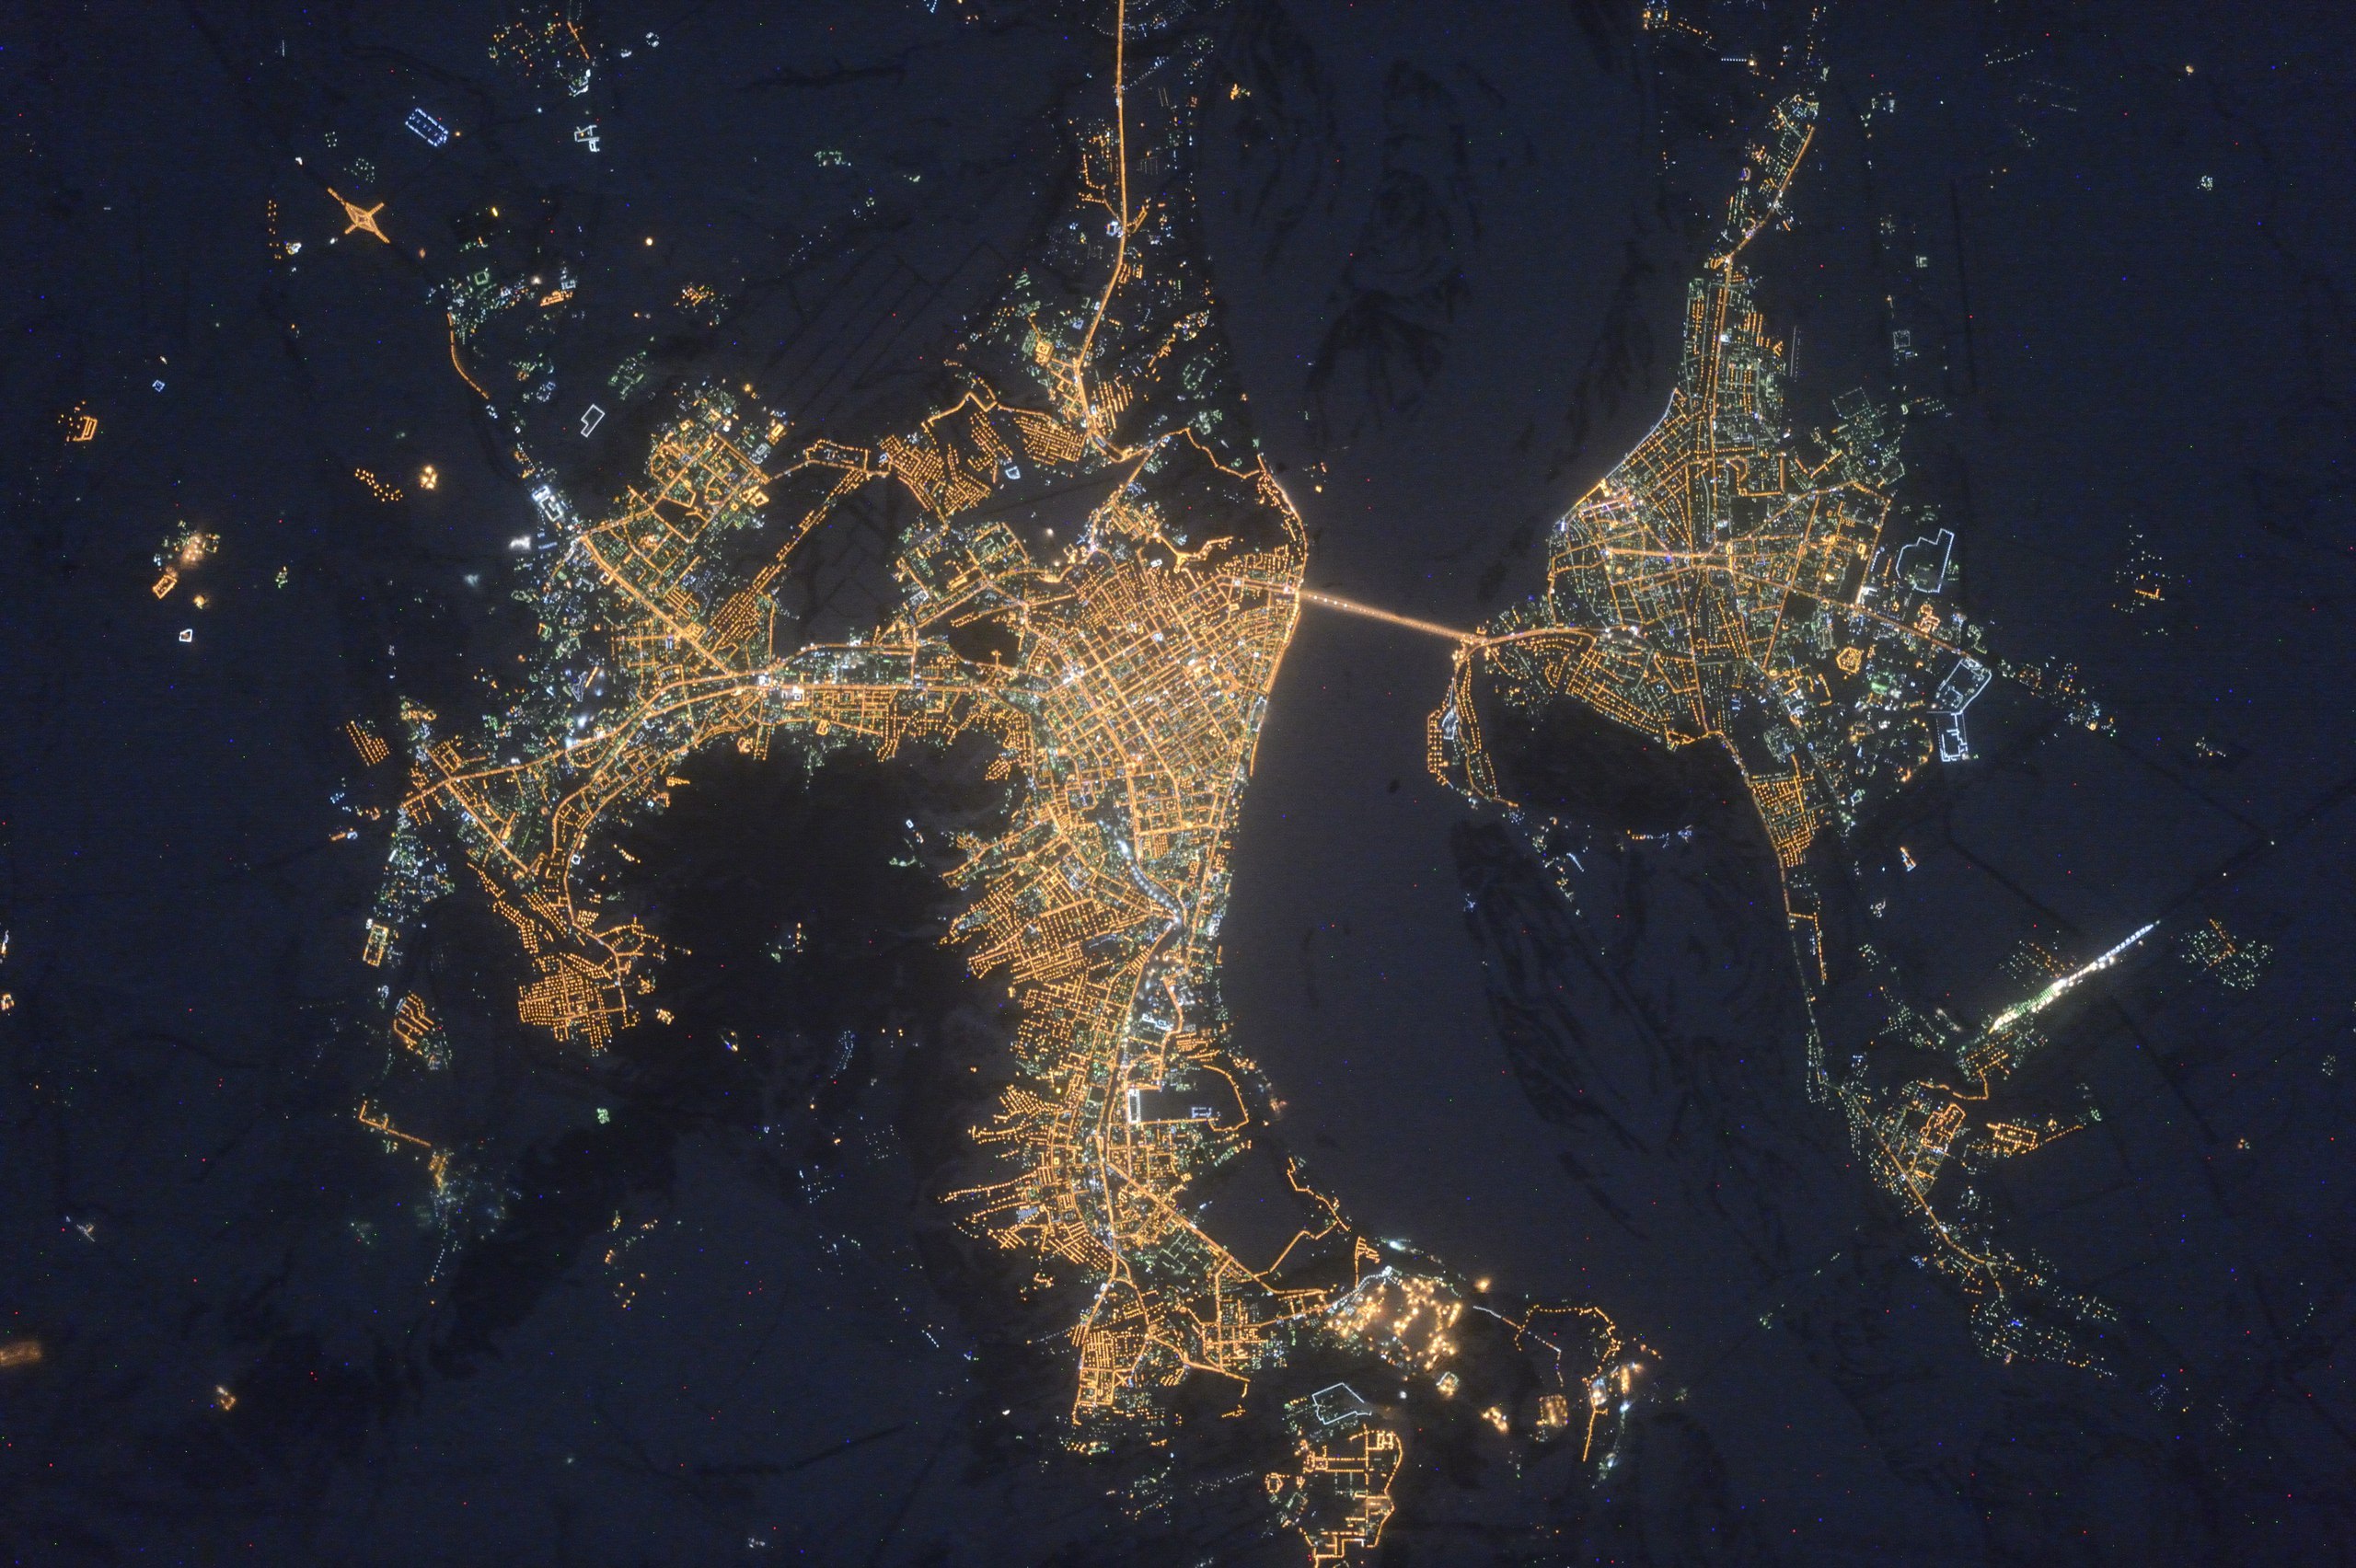 Обои реальном времени. Ночной Саратов снимок из космоса. Дельта Волги из космоса. Саратов и Энгельс из космоса. Города из космоса.